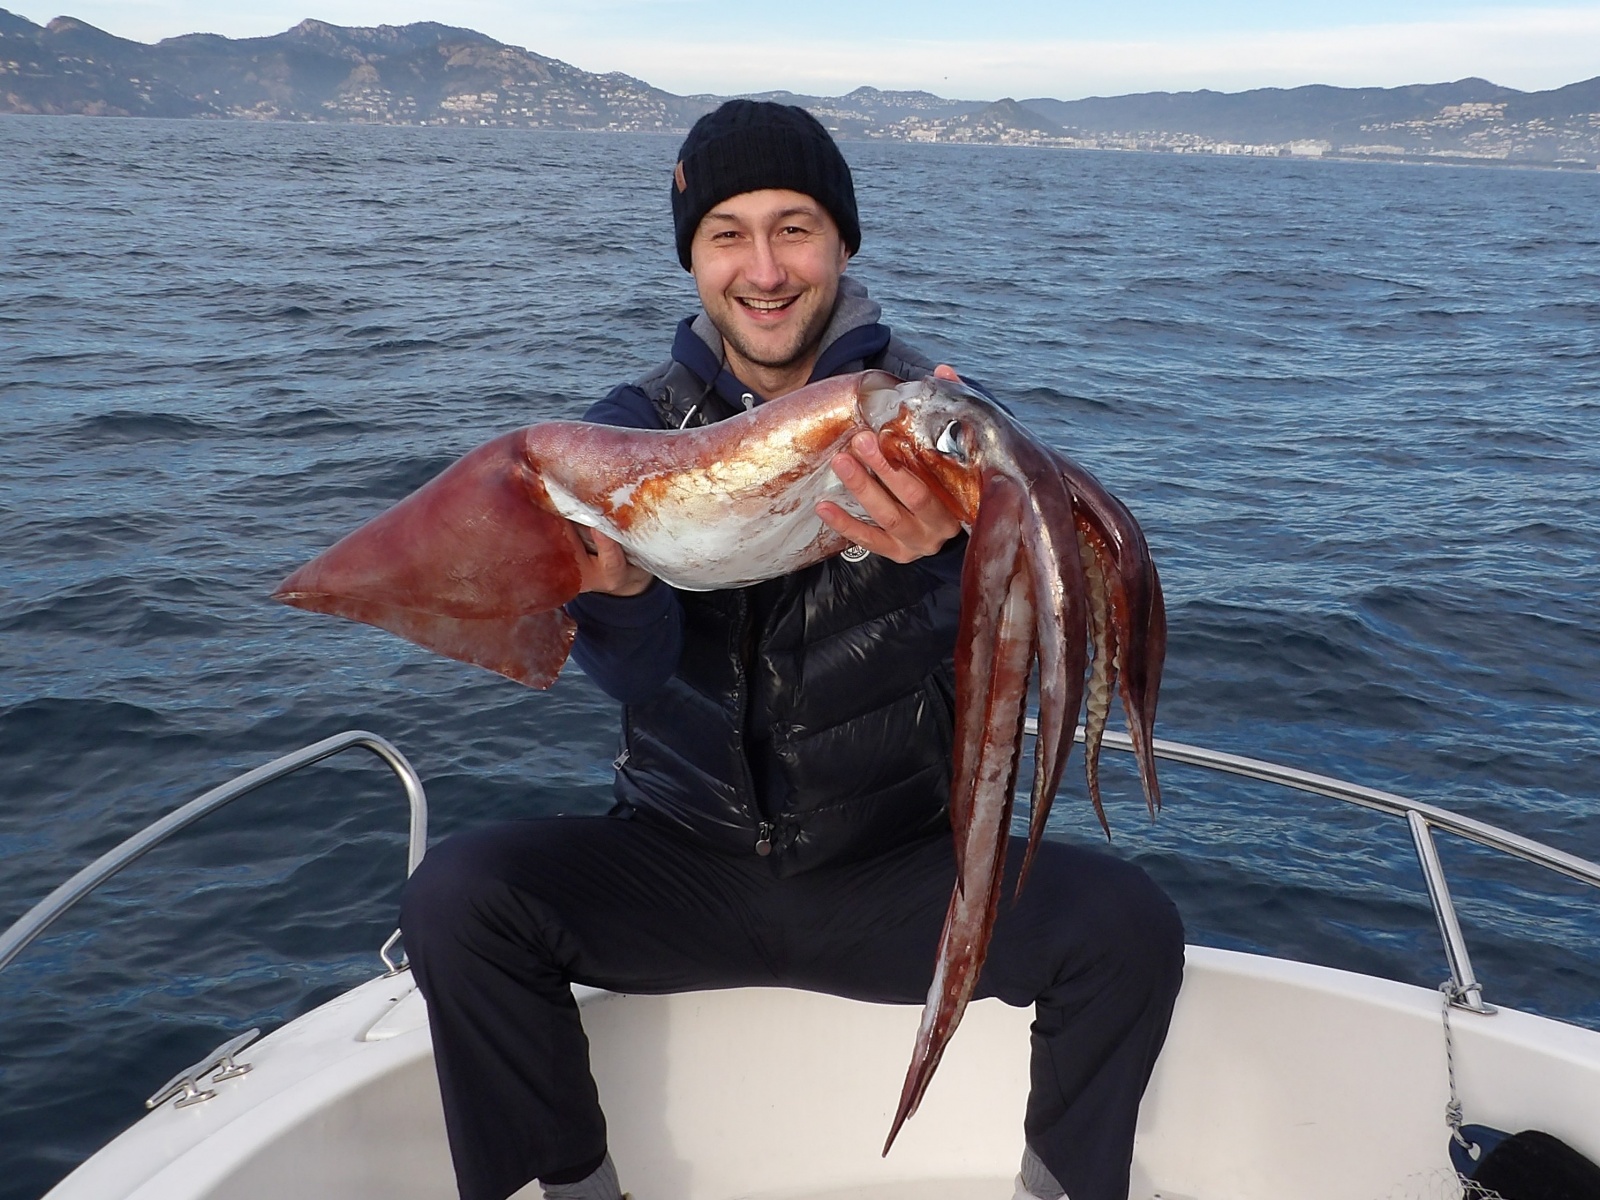 Ce calamar rouge de 7 kg pris par un des stagiaires du guide de pêche Fabien Harbers montre combien ces céphalopodes peuvent devenir gros ! 